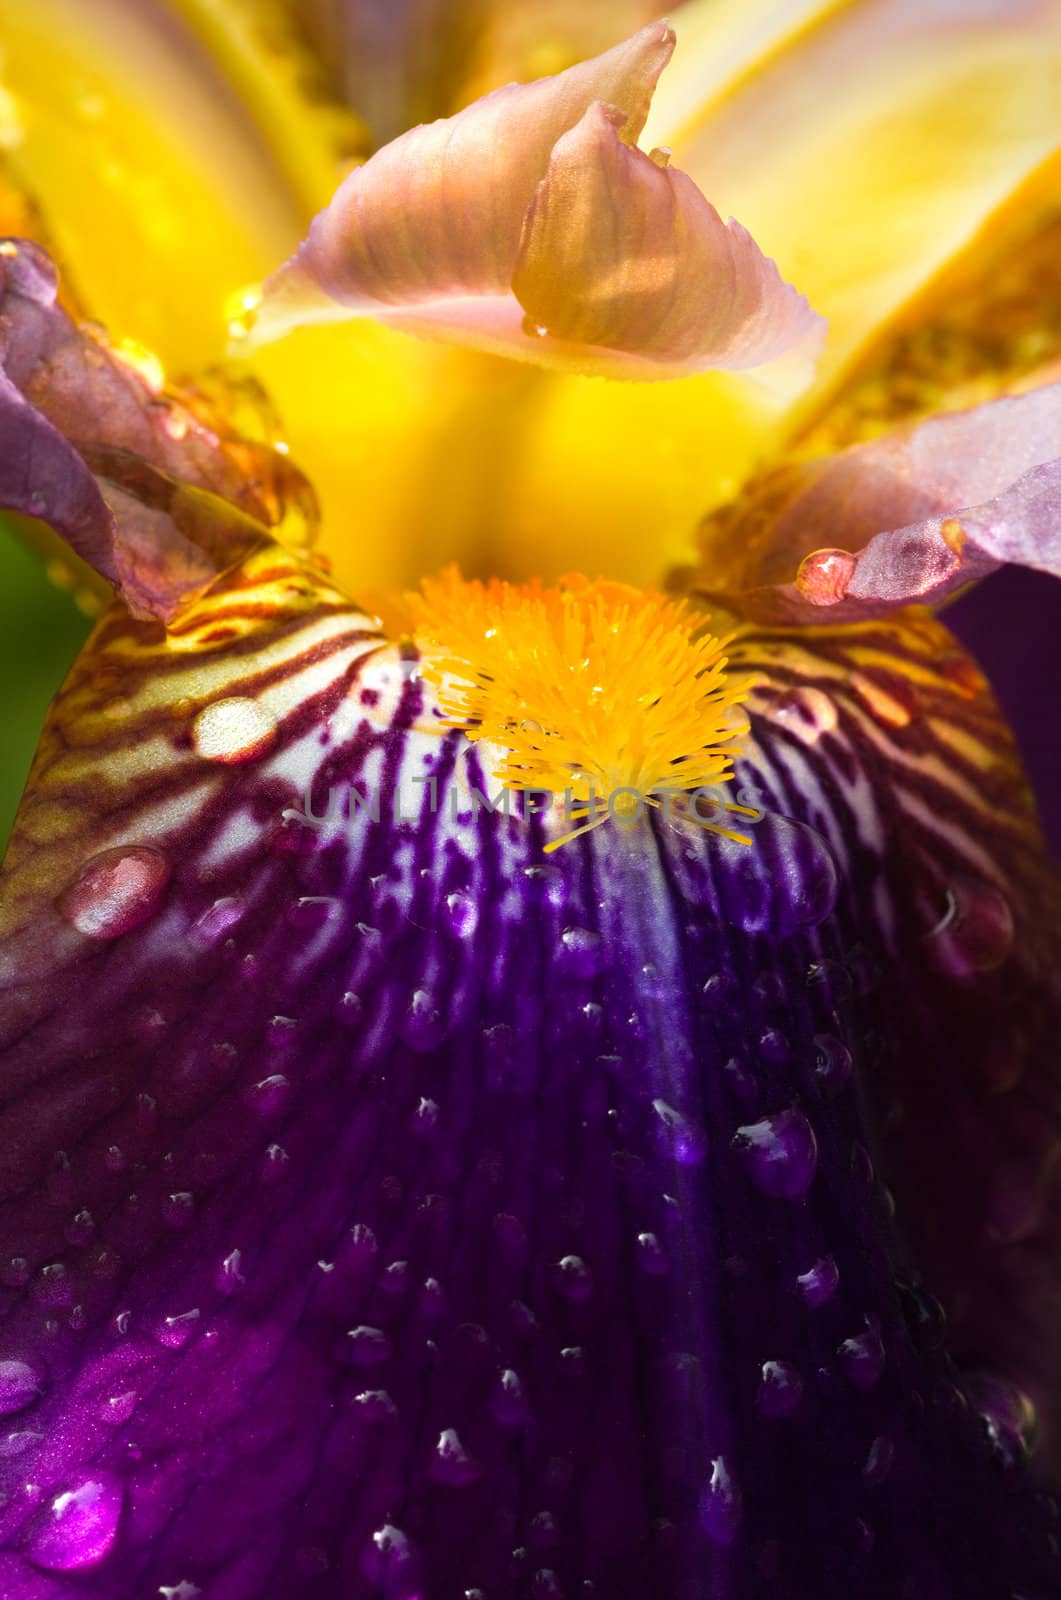 Purple German Iris or Iris germanica macro by Colette